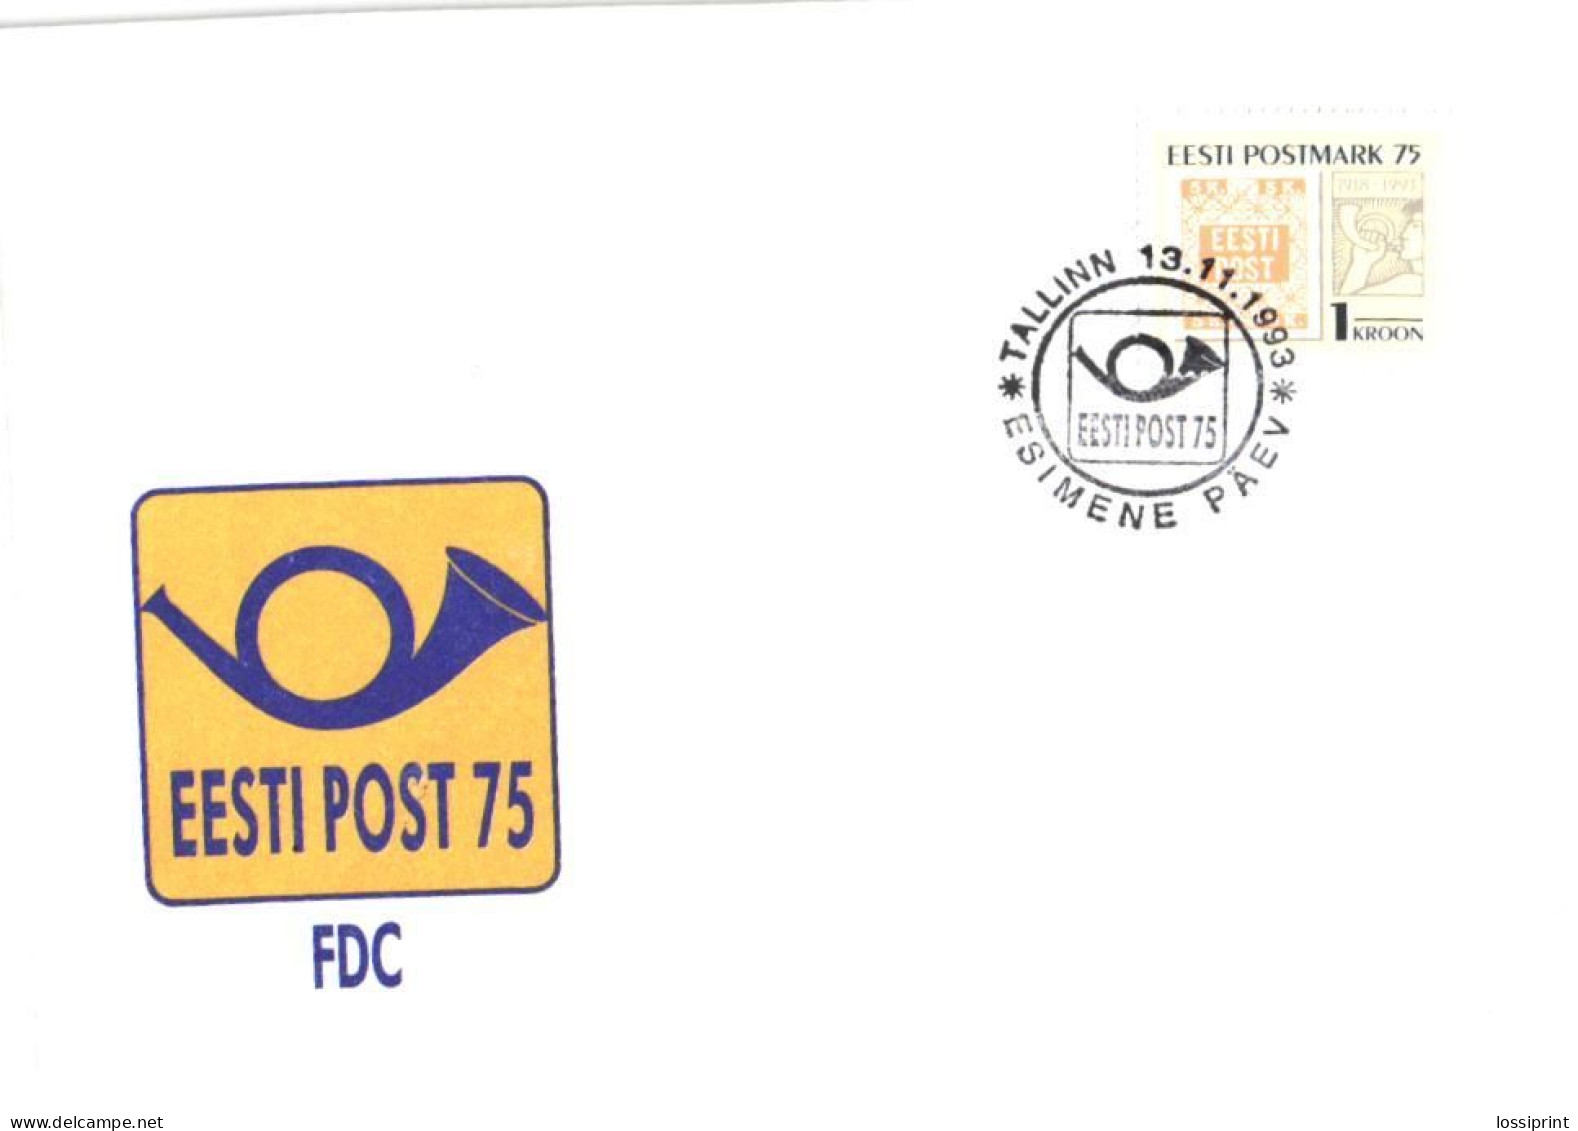 Estonia:FDC, Estonian Postal Stamp 75, 1993 - Estland